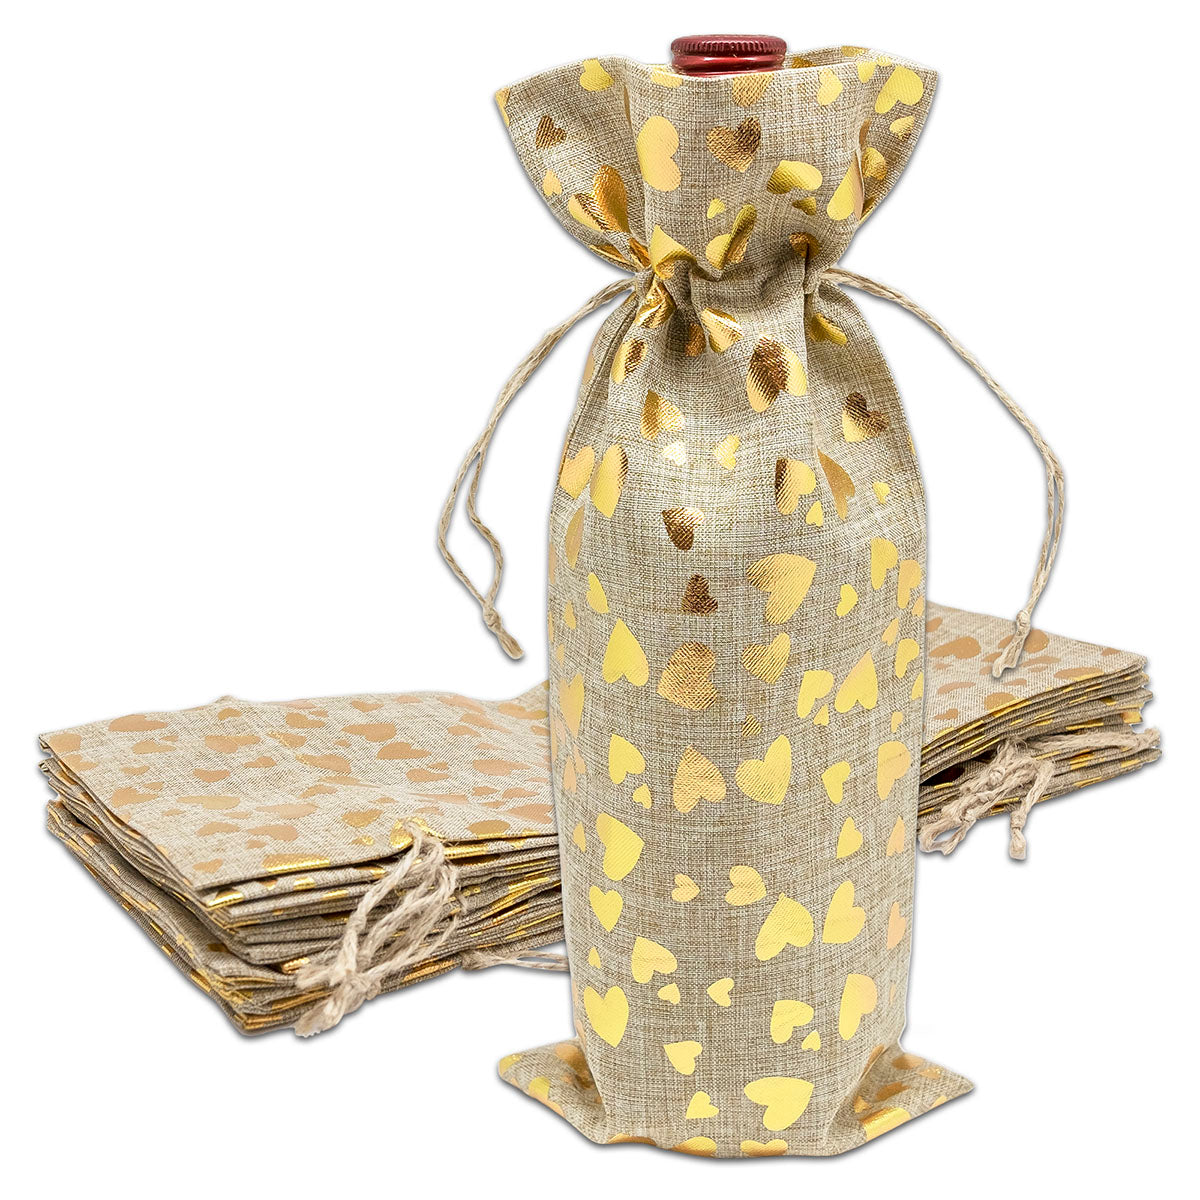 6" x 14" Jute Burlap Gold Heart Wine Bottle Drawstring Gift Bags